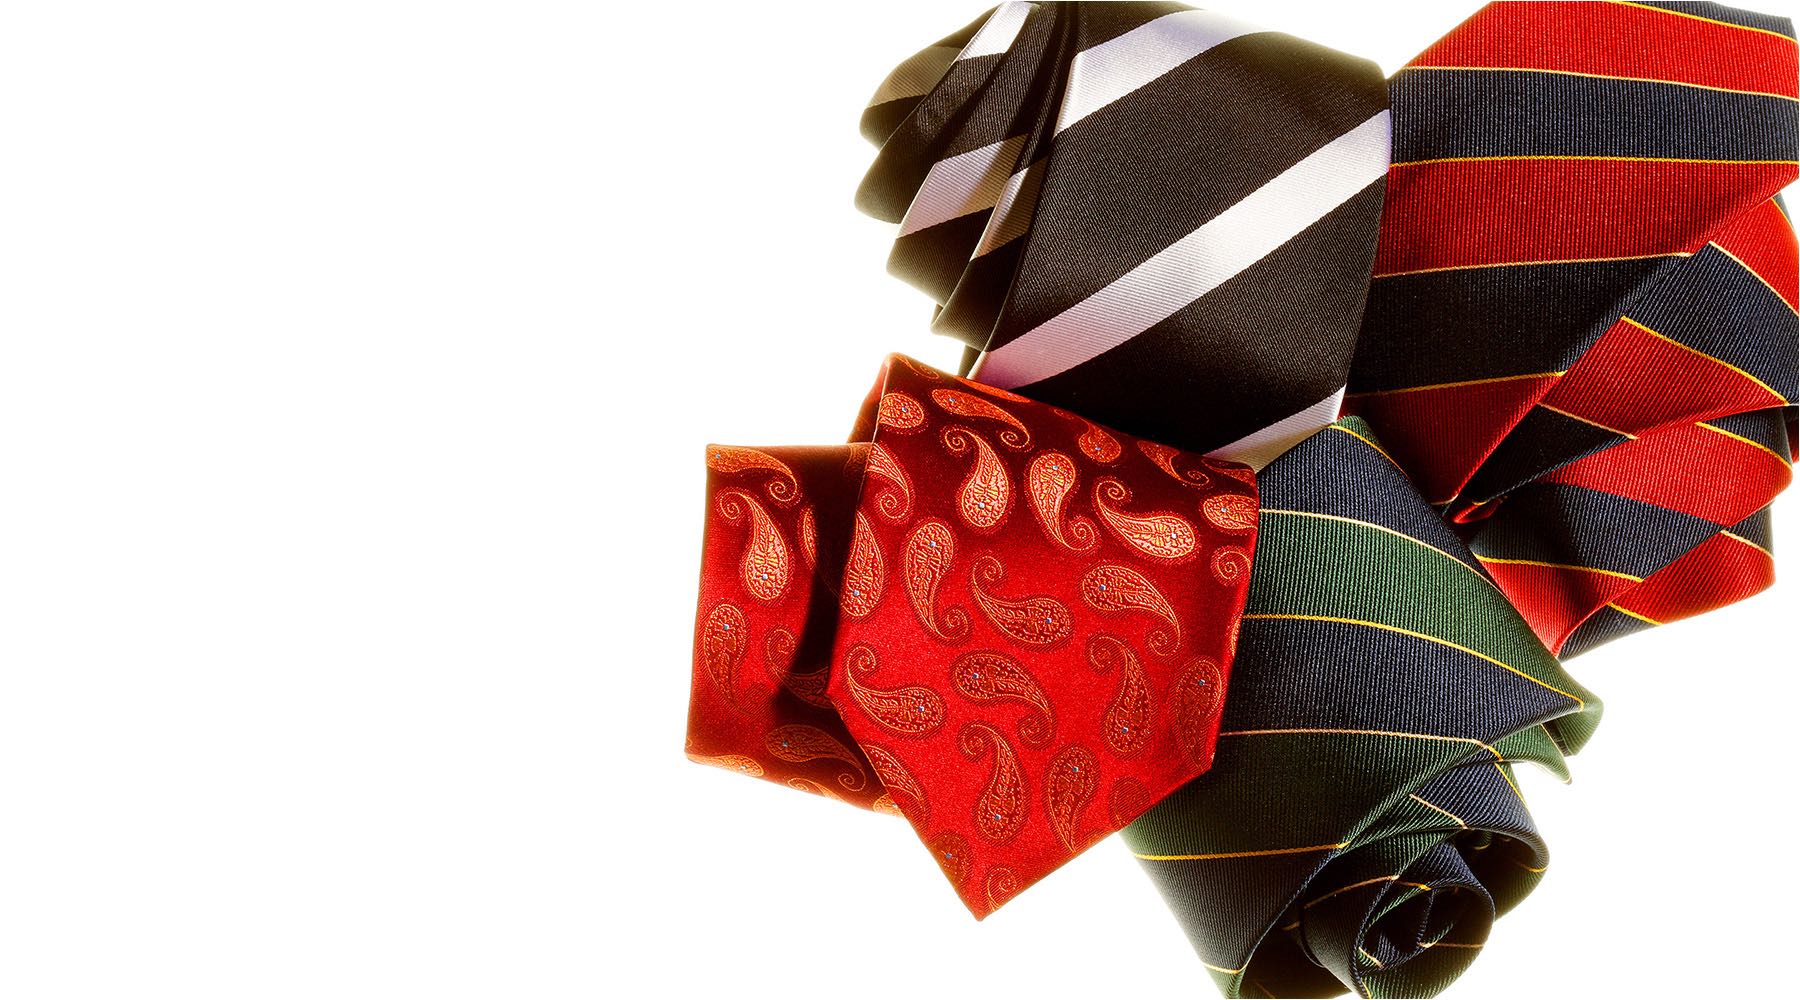  Produktfotografie. Studioaufnahme von Krawatten eines Krawattenherstellers für Imagekatalog und Messeplakate. Copyright by Fotostudio Jörg Riethausen 